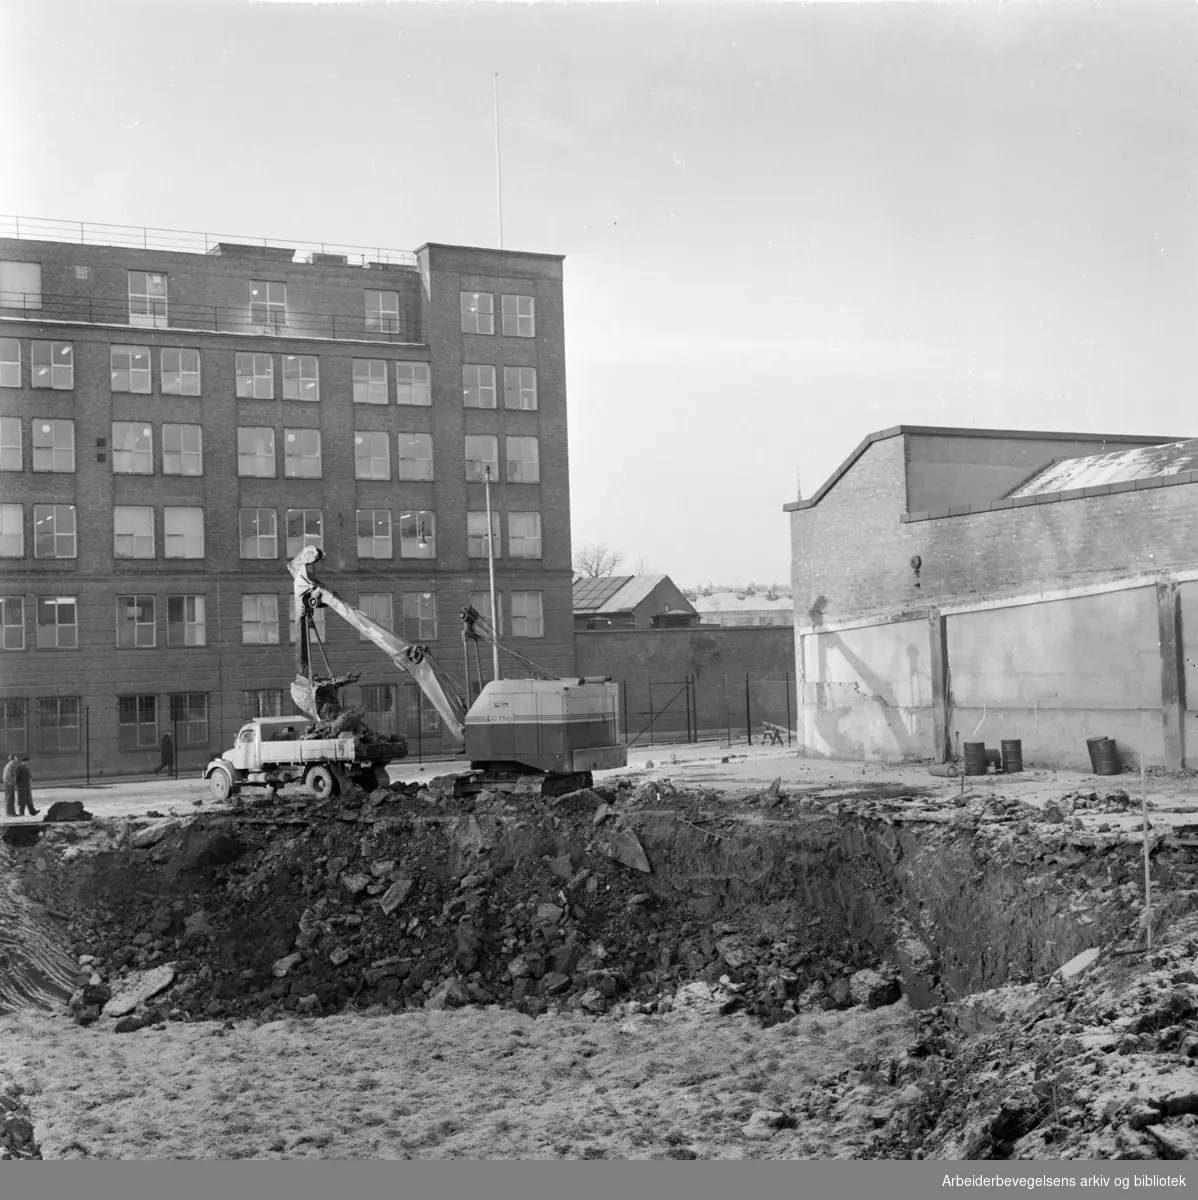 Freia a.s.: Verksgata graves opp - om ikke lenge vil Freias nybygg stå klart. Desember 1963